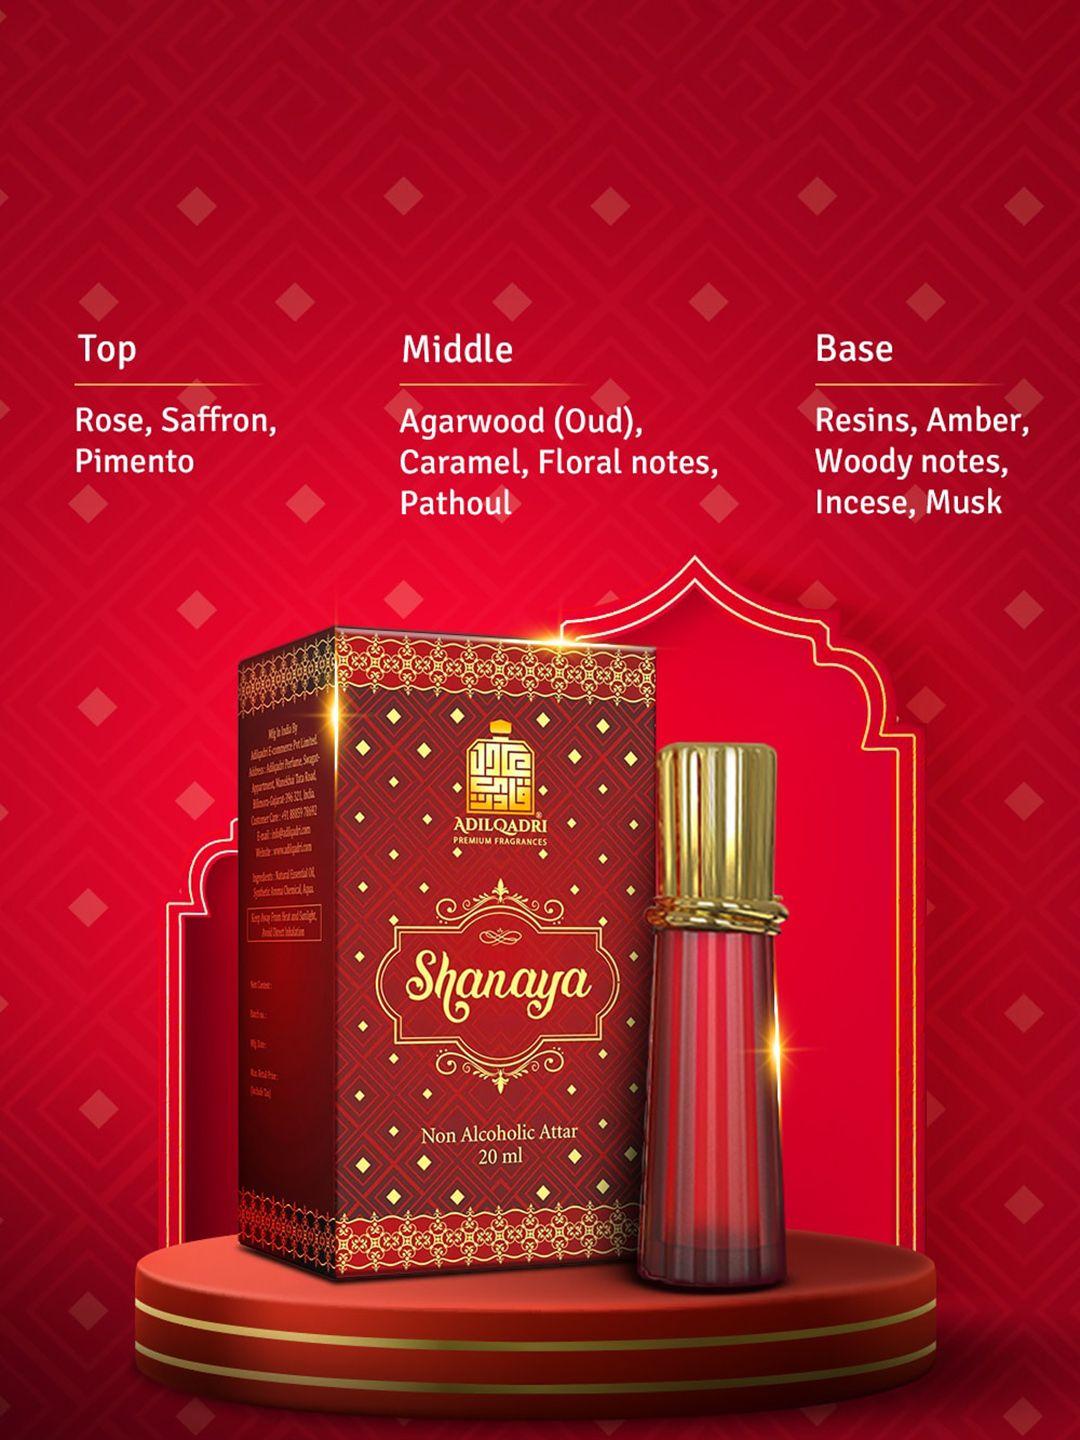 adilqadri shanaya luxury long lasting attar perfume 12 ml